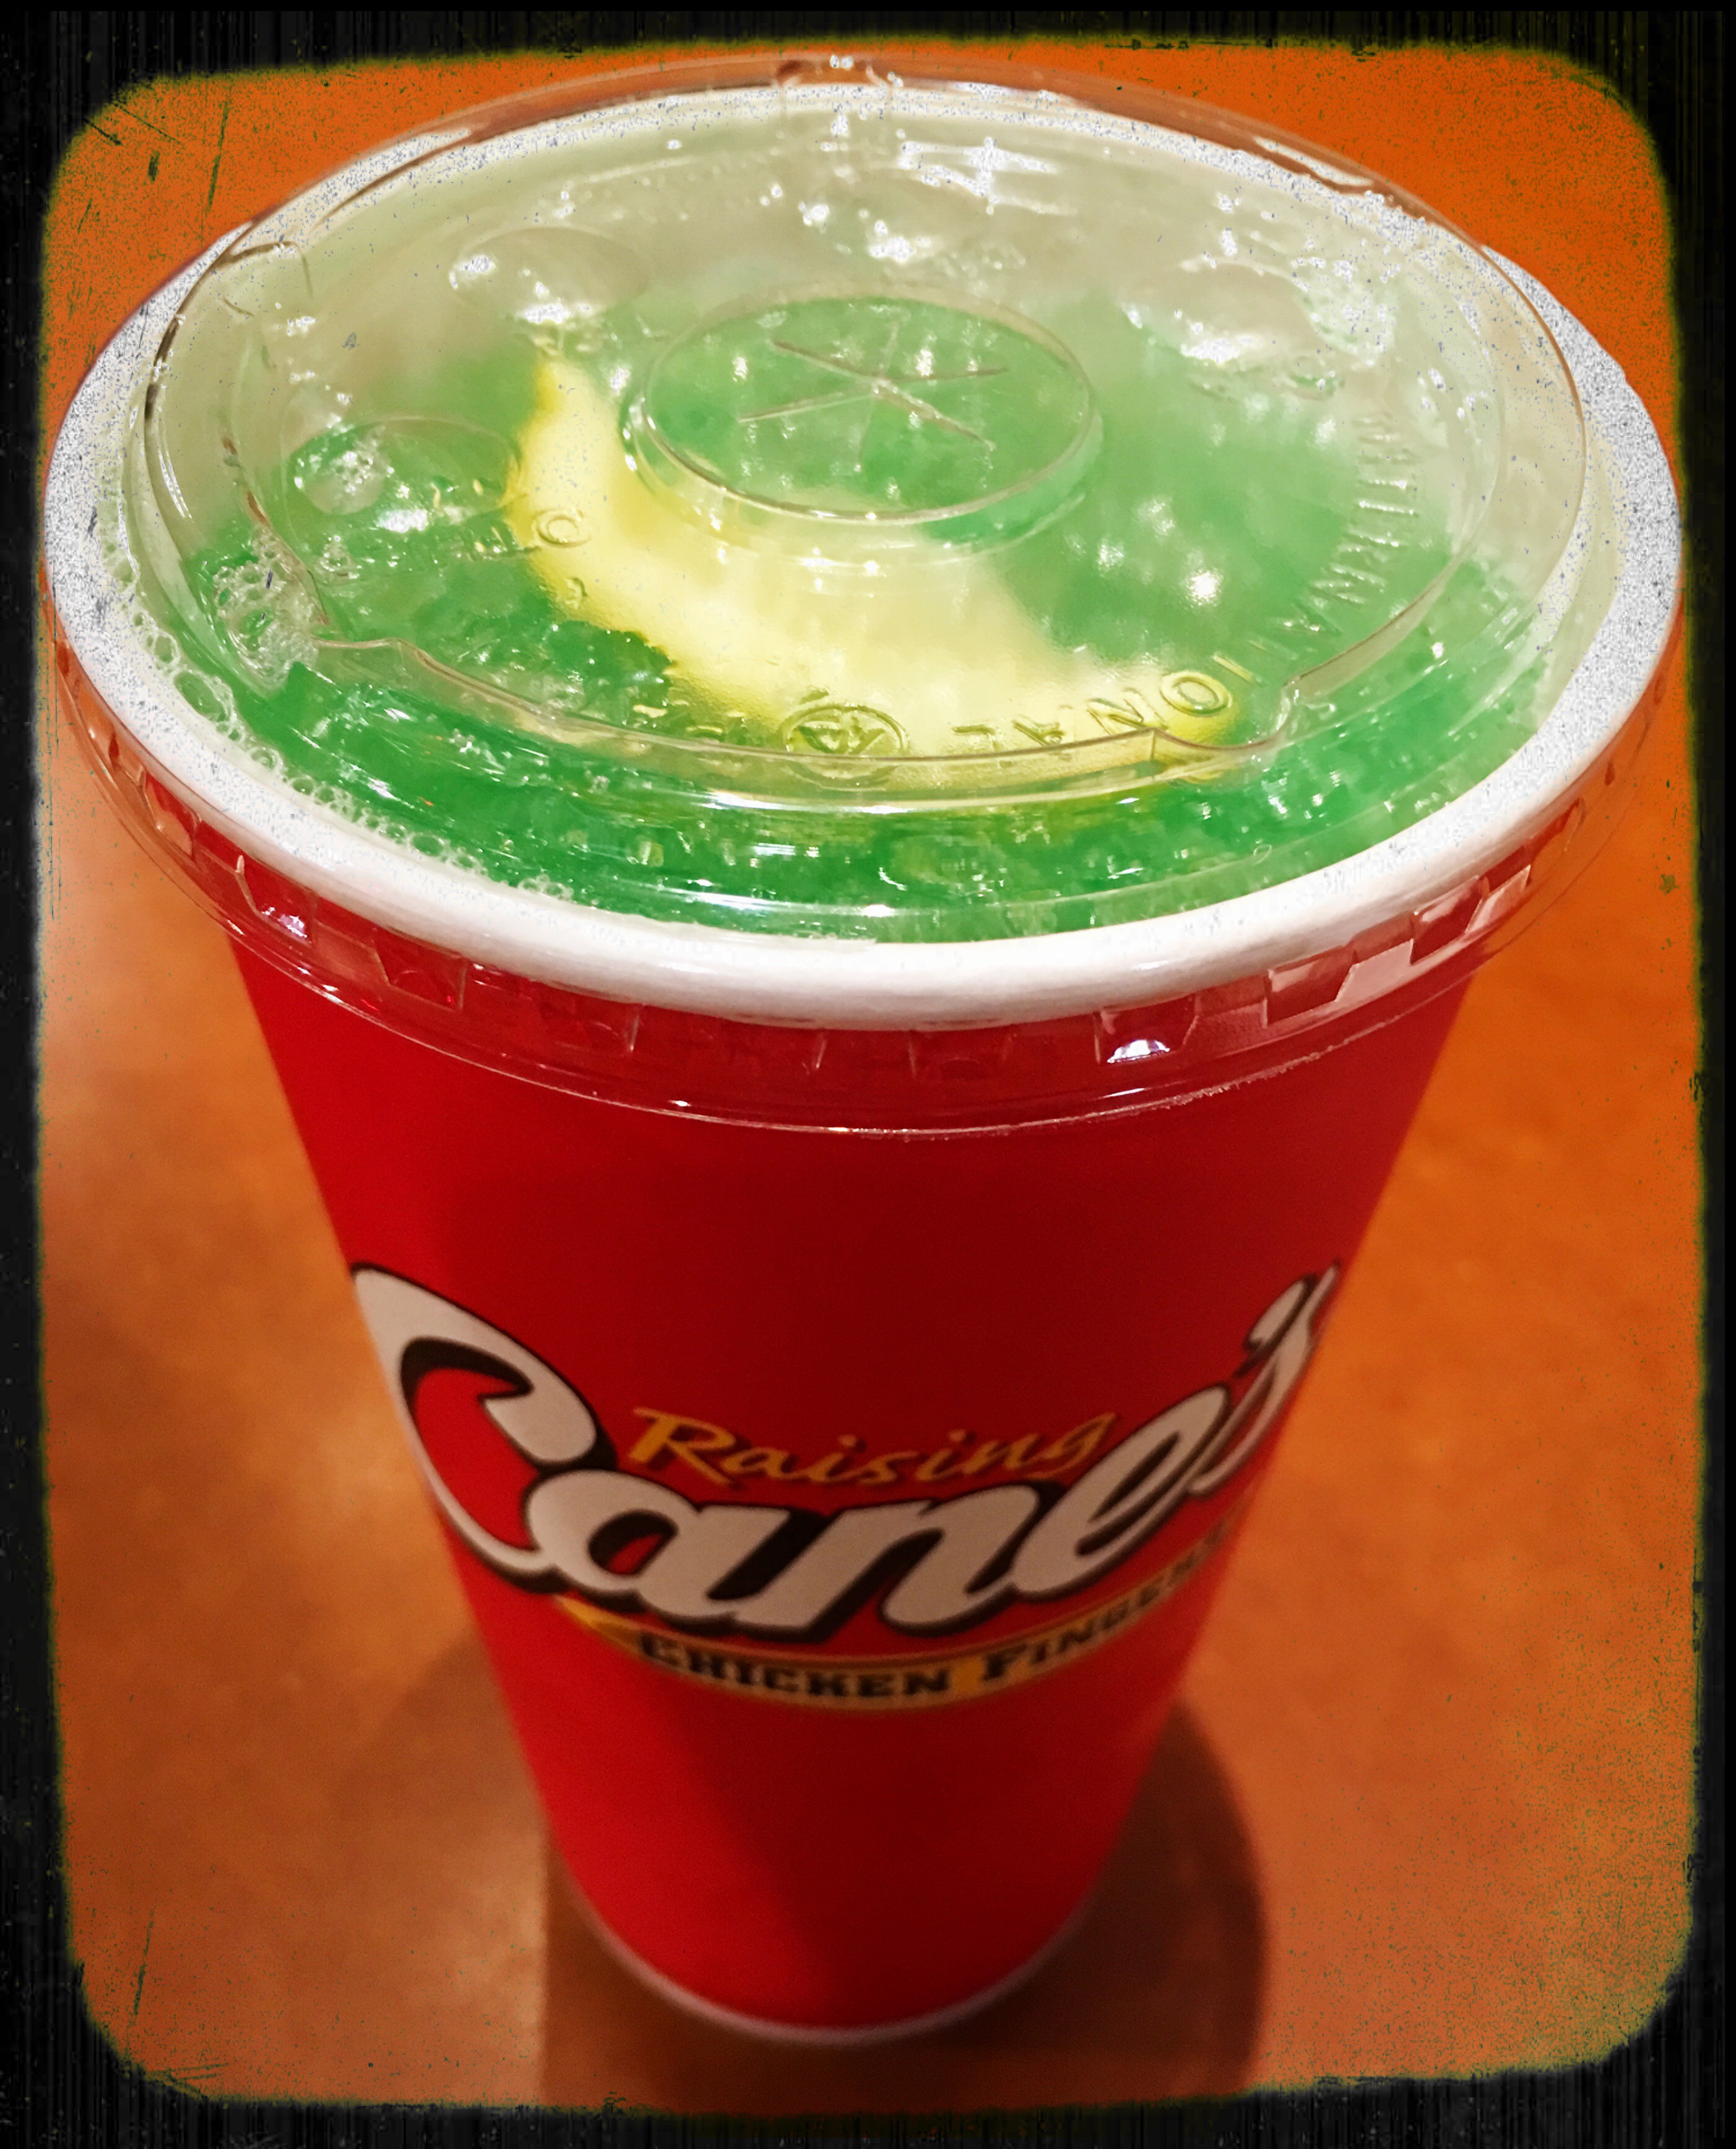 Green lemonade season